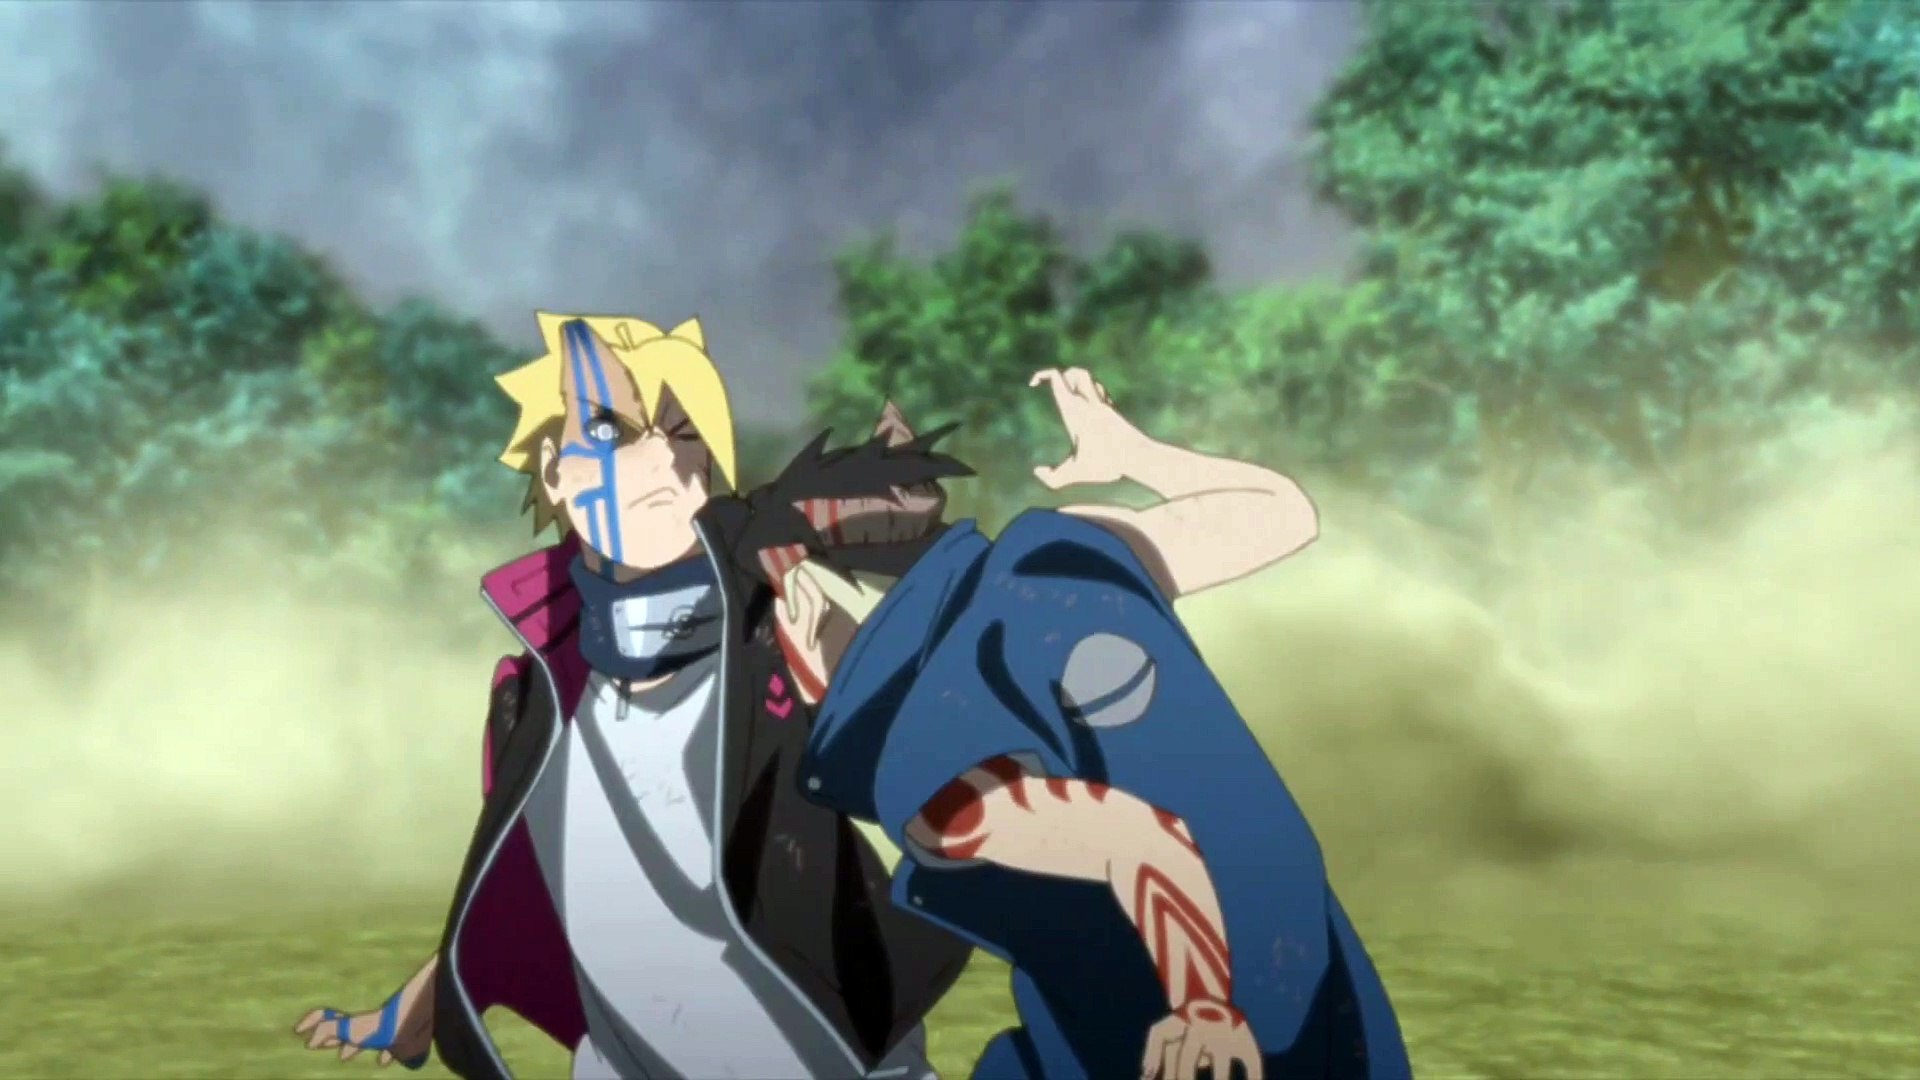 Ver Boruto: Naruto Next Generations temporada 1 episodio 292 en streaming